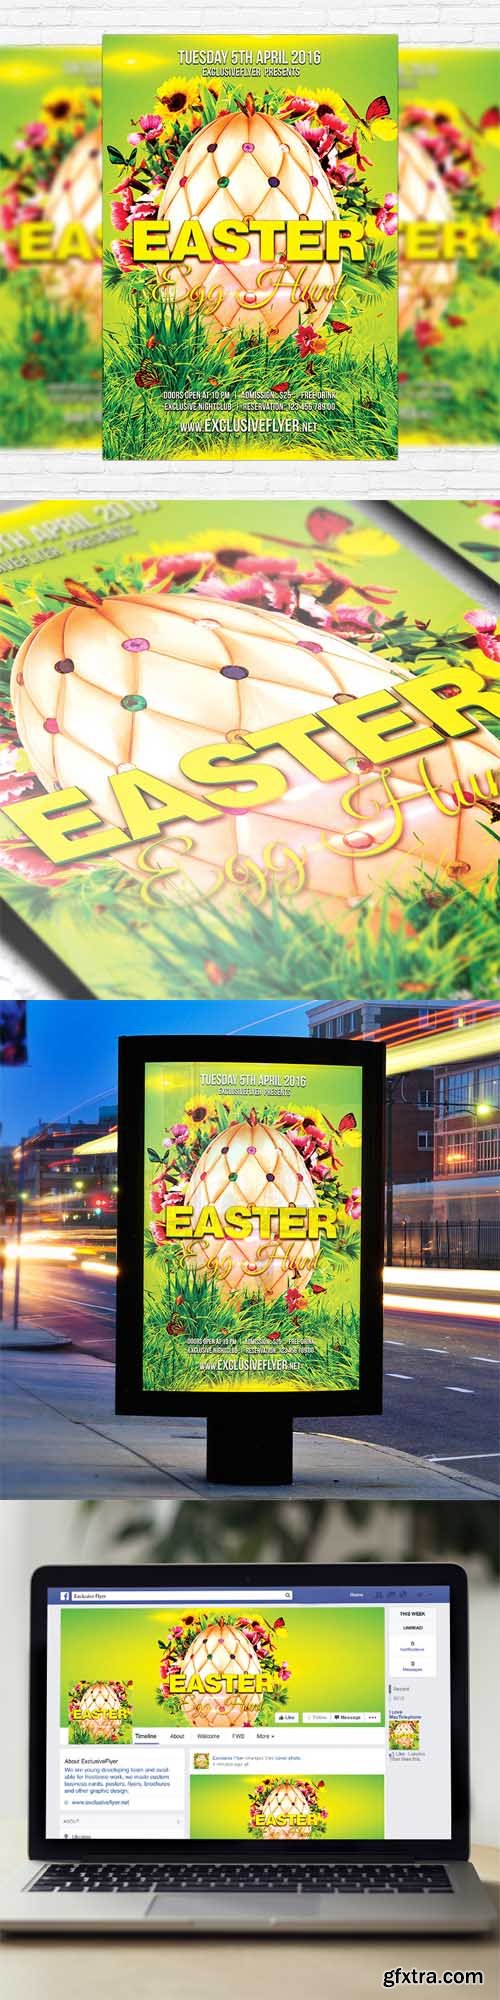 Easter Egg Hunt - Flyer Template + Facebook Cover